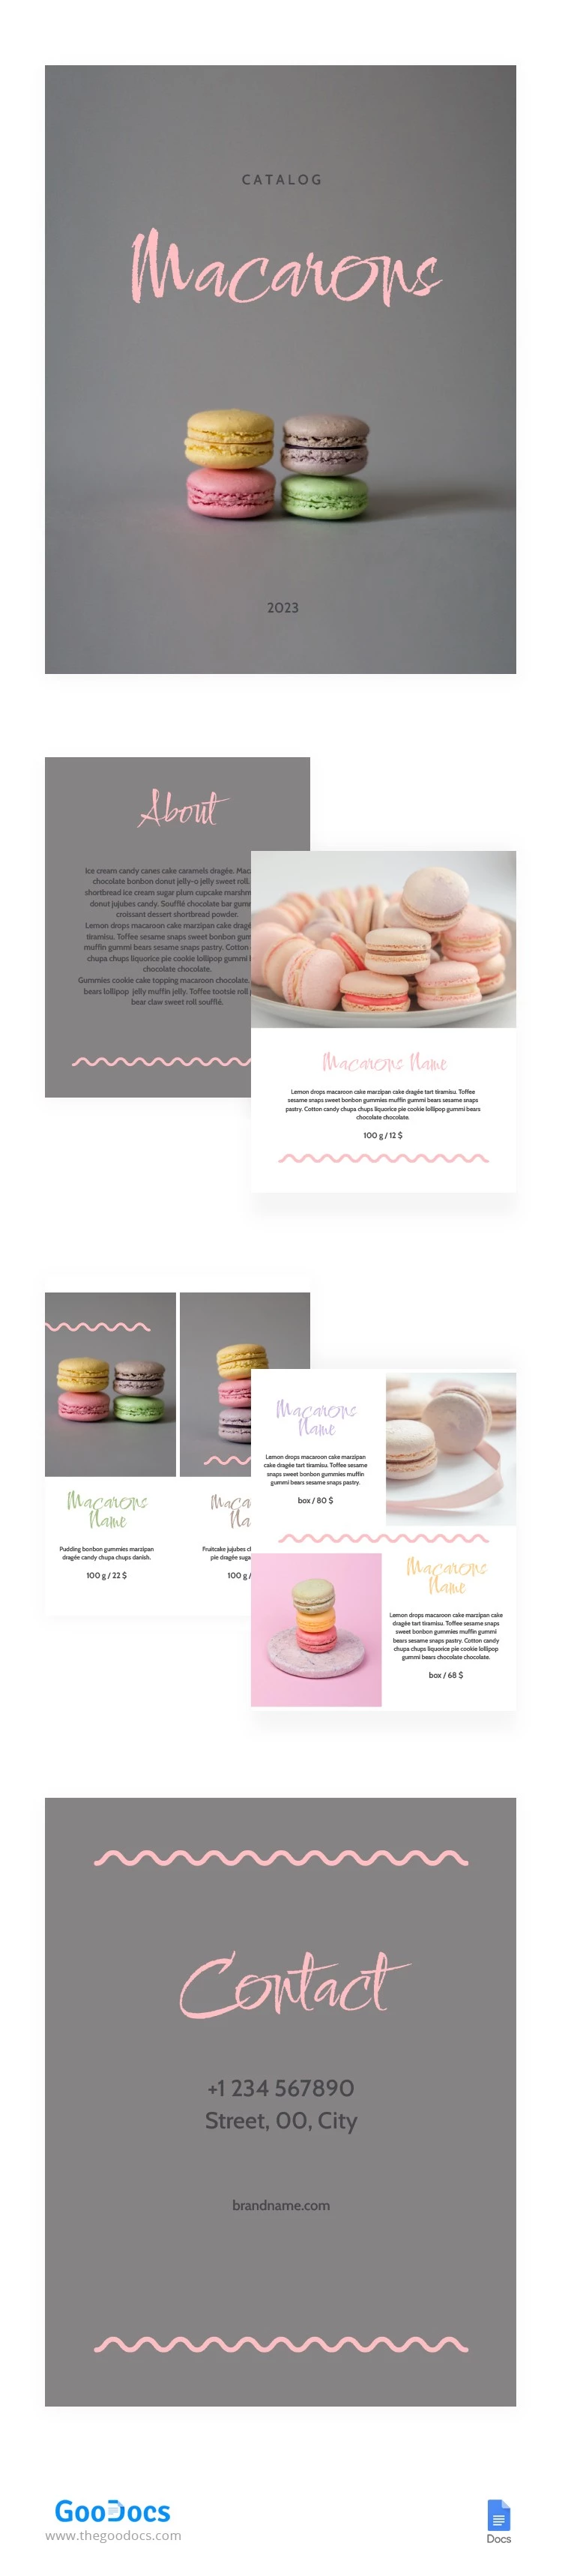 Catálogo de Macarons lindos - free Google Docs Template - 10064019